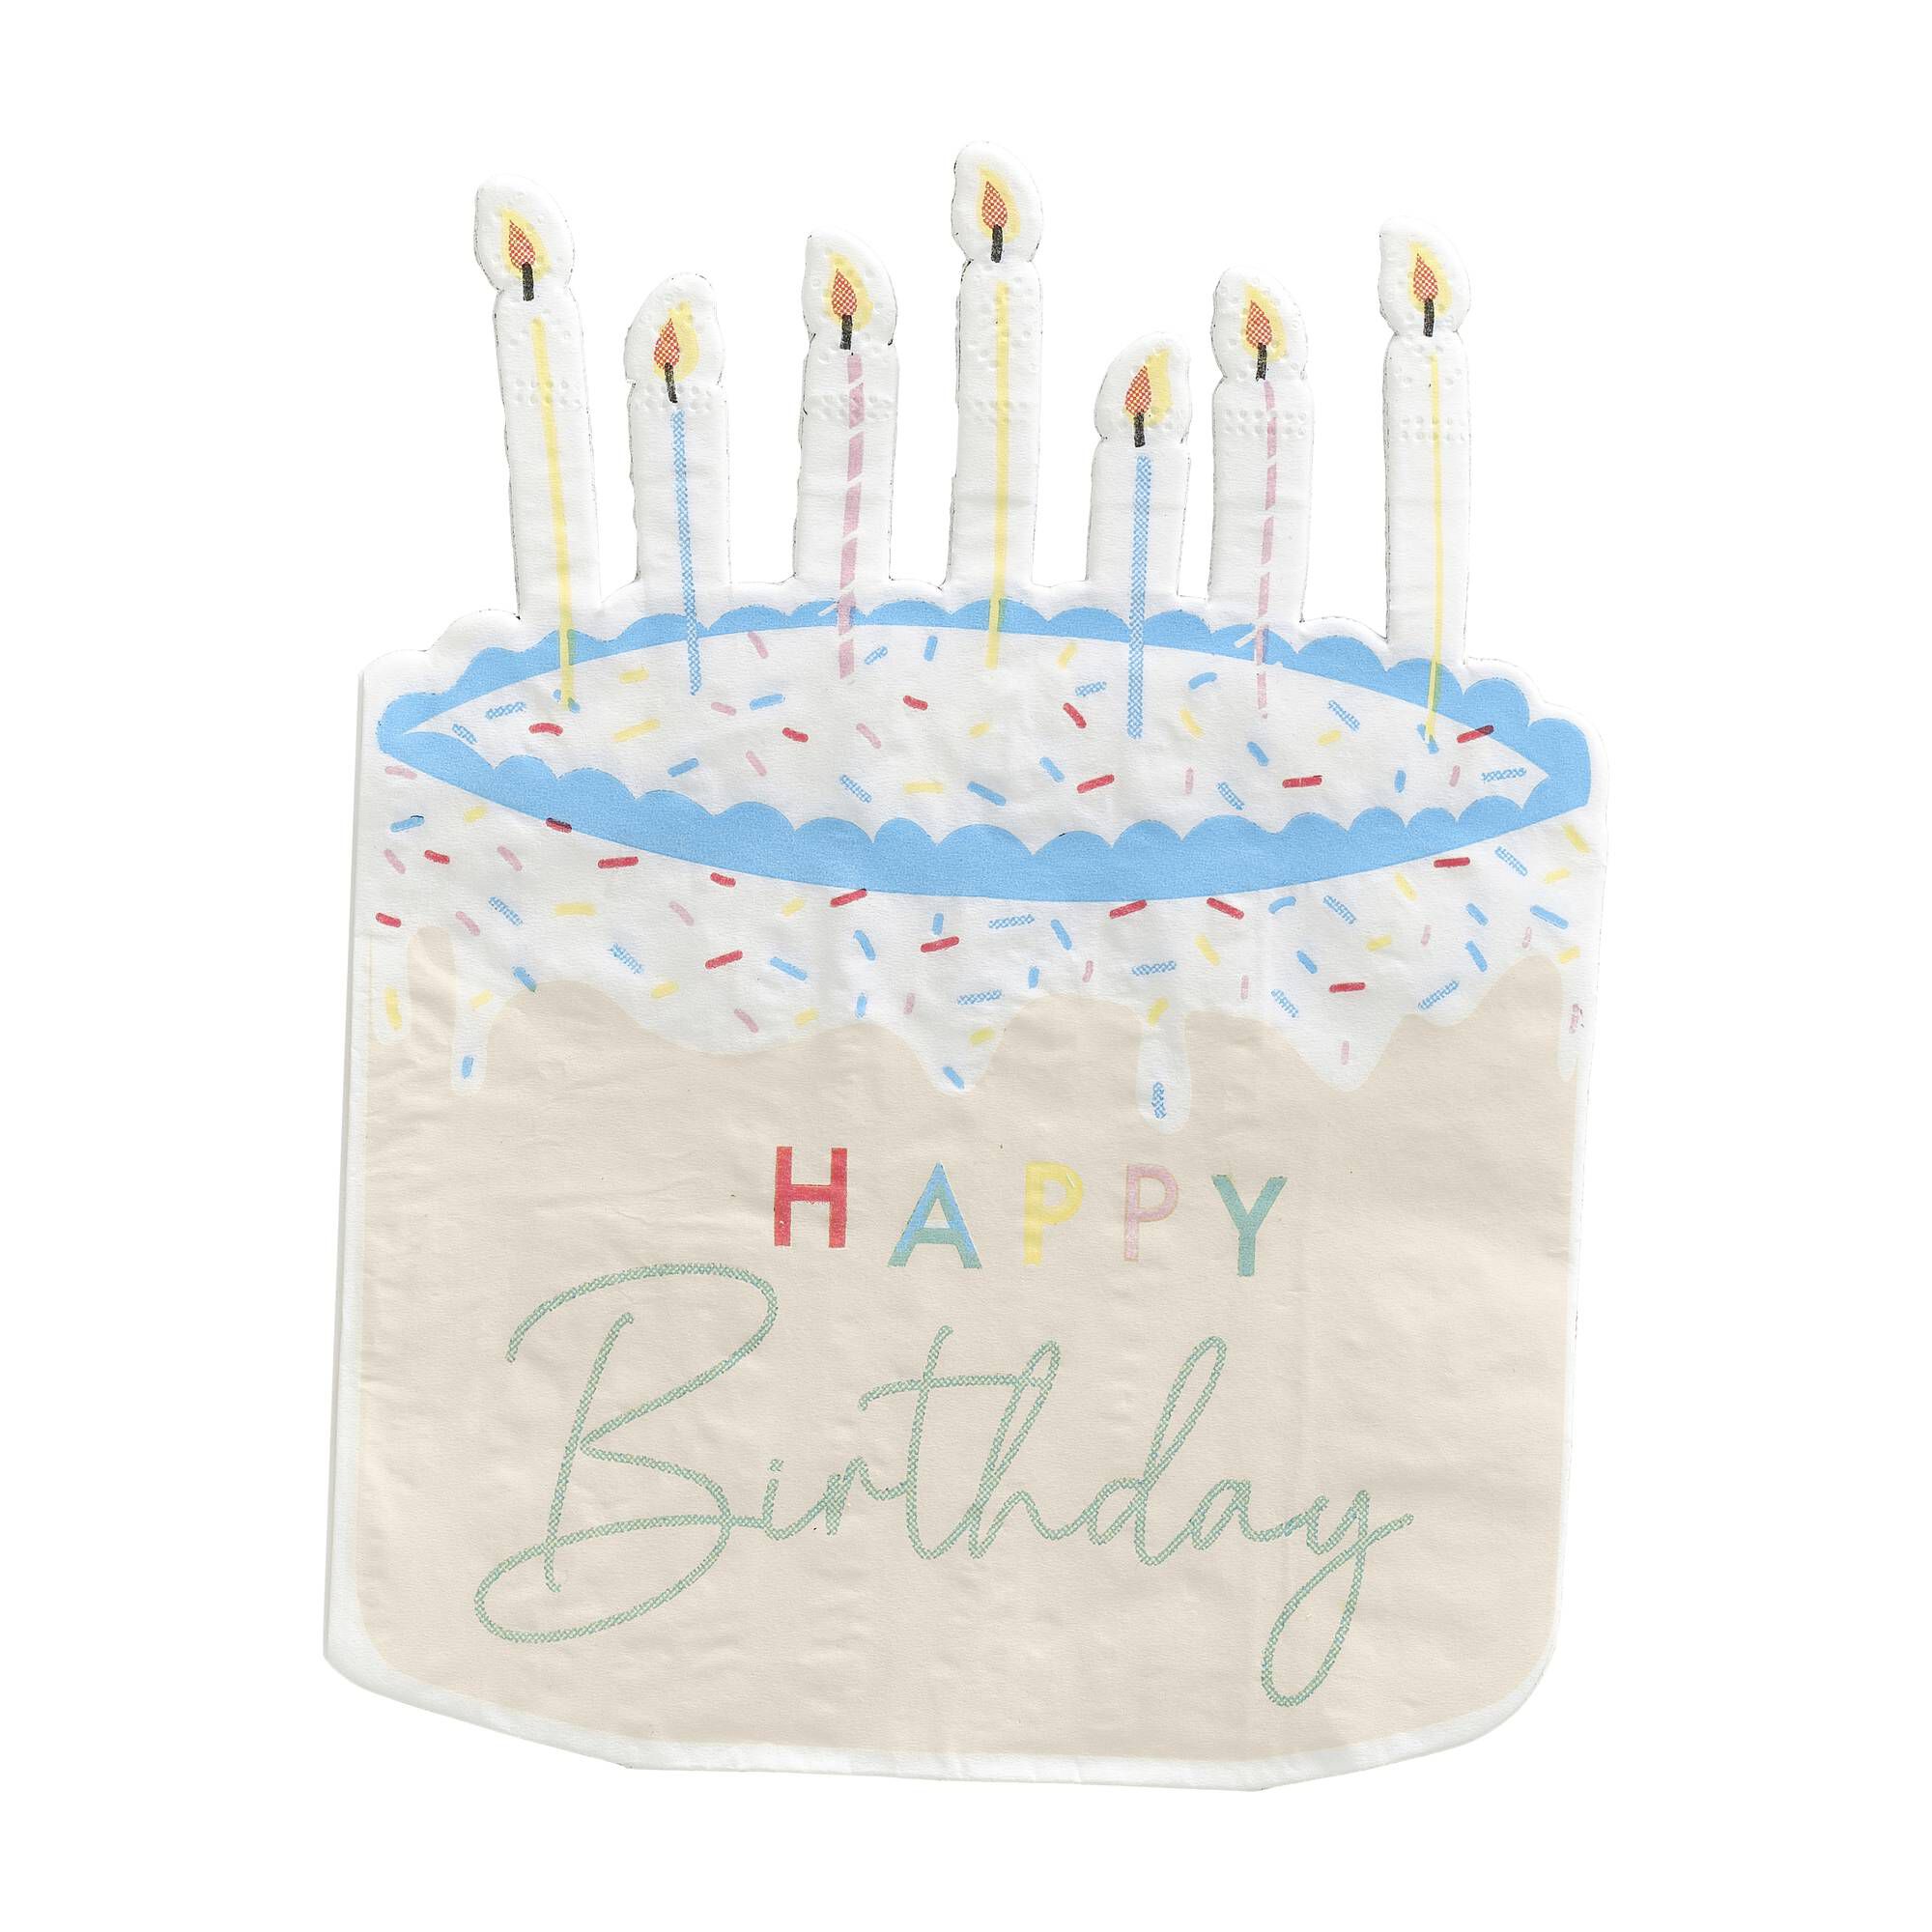 Birthday Cake Stock Photo - Download Image Now - Birthday Cake, Number 16,  Anniversary - iStock